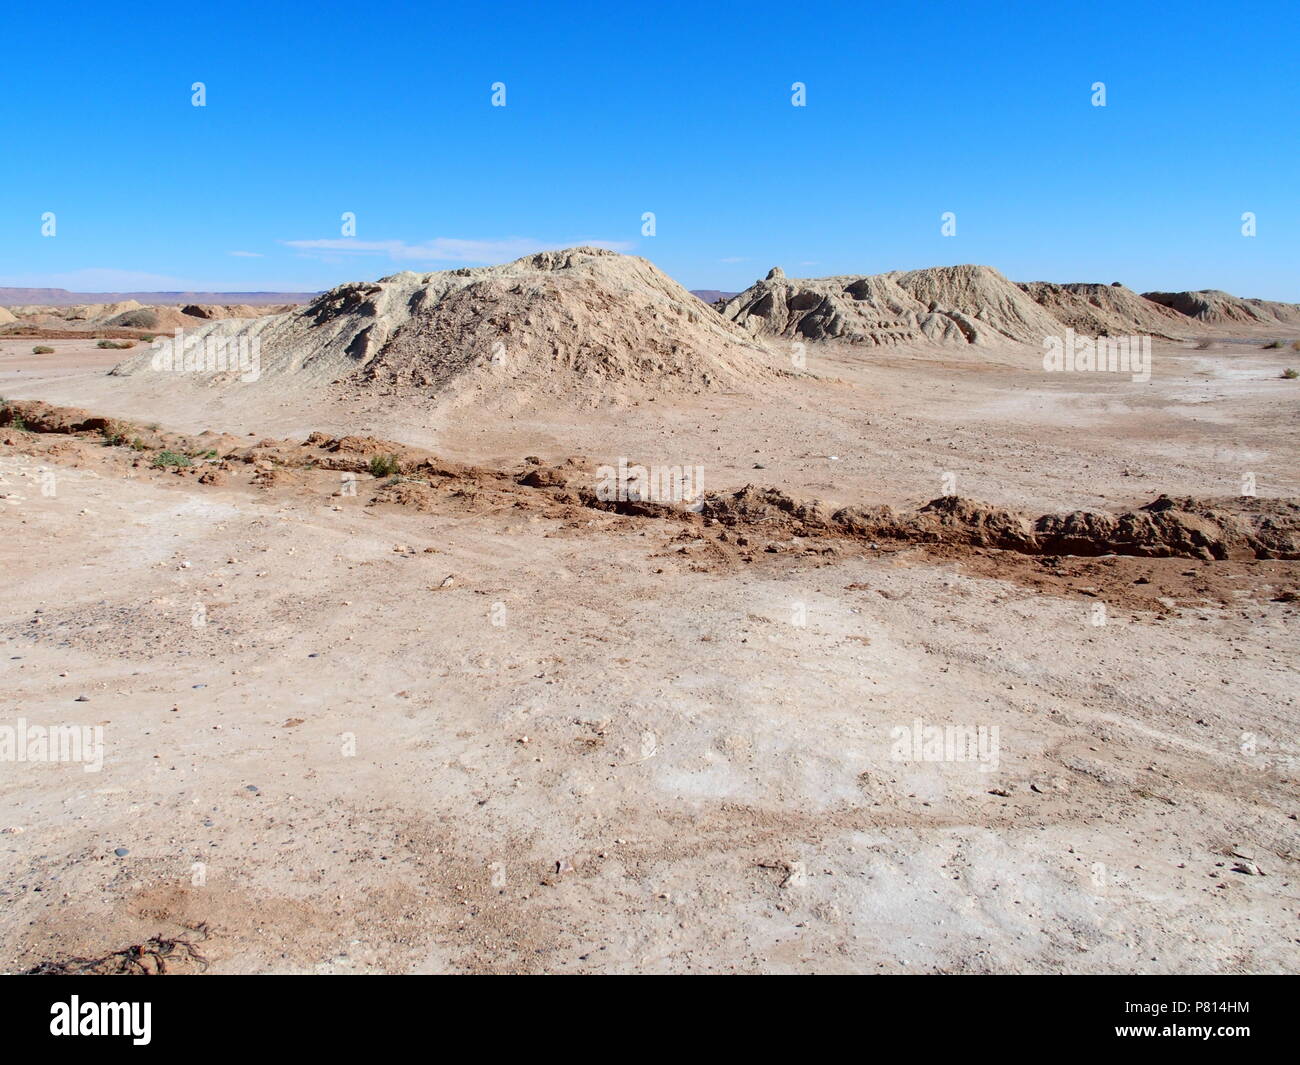 Tolles Panorama der Ketthara, das Wasser gut an afrikanischen sandige Wüste Sahara Landschaften in der Nähe von Erfoud in Marokko mit klaren blauen Himmel in 2017 kalten s Stockfoto